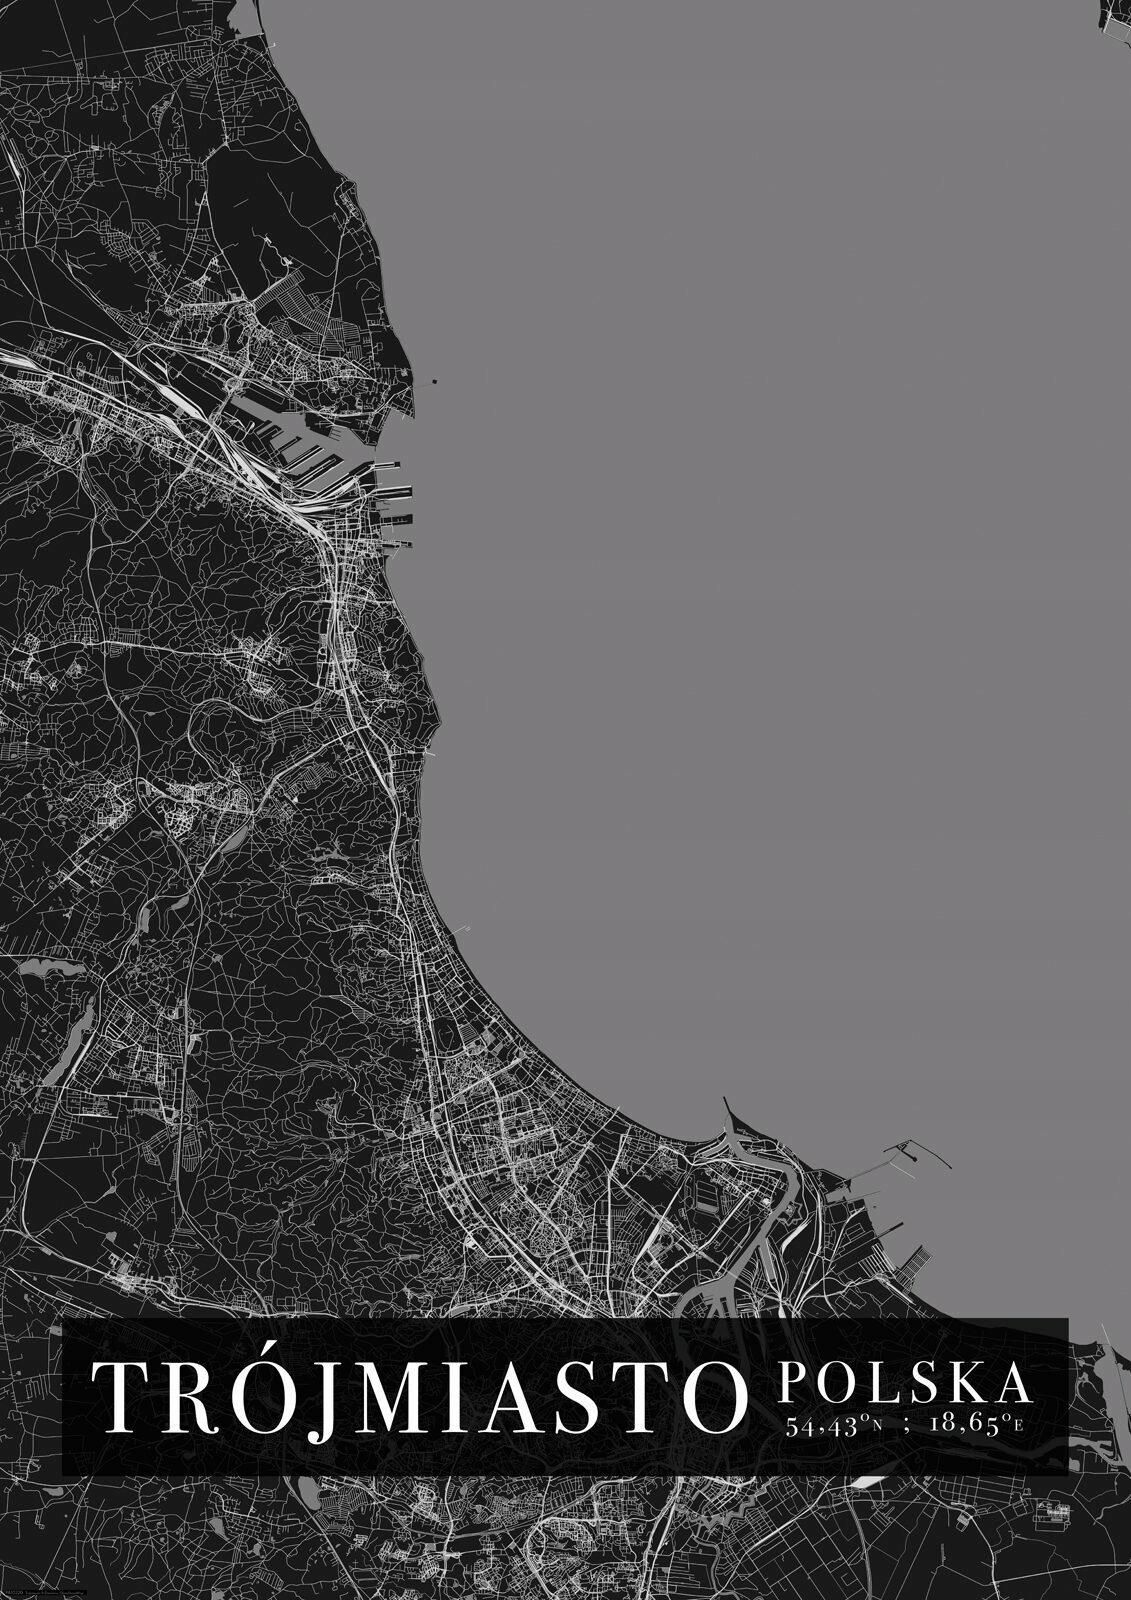 Trójmiasto Mapa Miasta Plakat A1 594x841 Cm Opinie I Atrakcyjne Ceny Na Ceneopl 4973